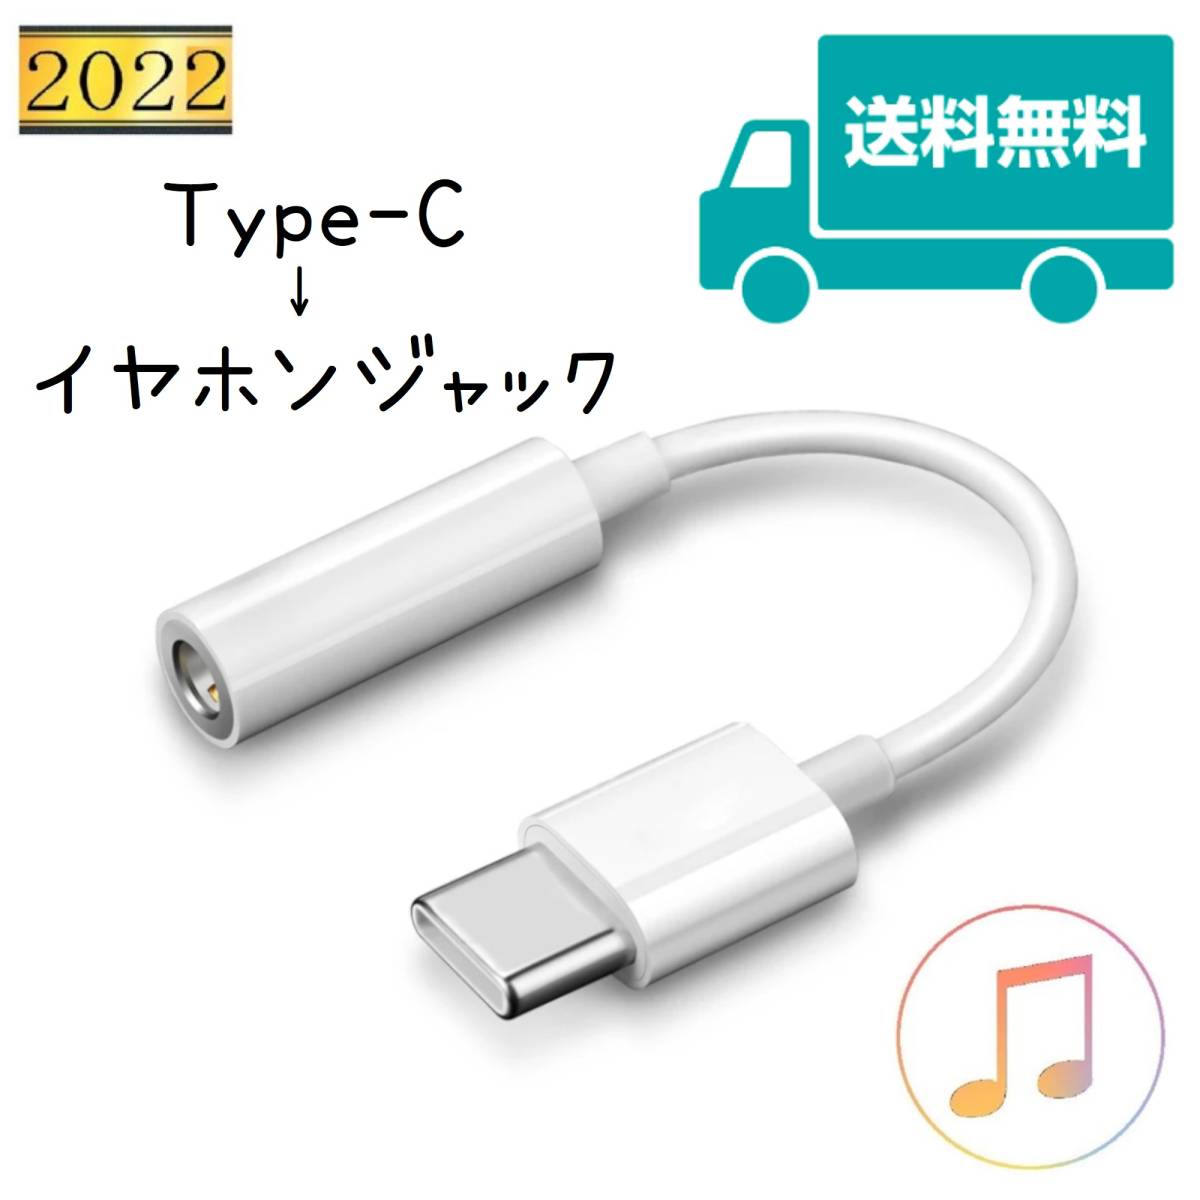 Type-C イヤホン 変換ケーブル USB c イヤホンジャック